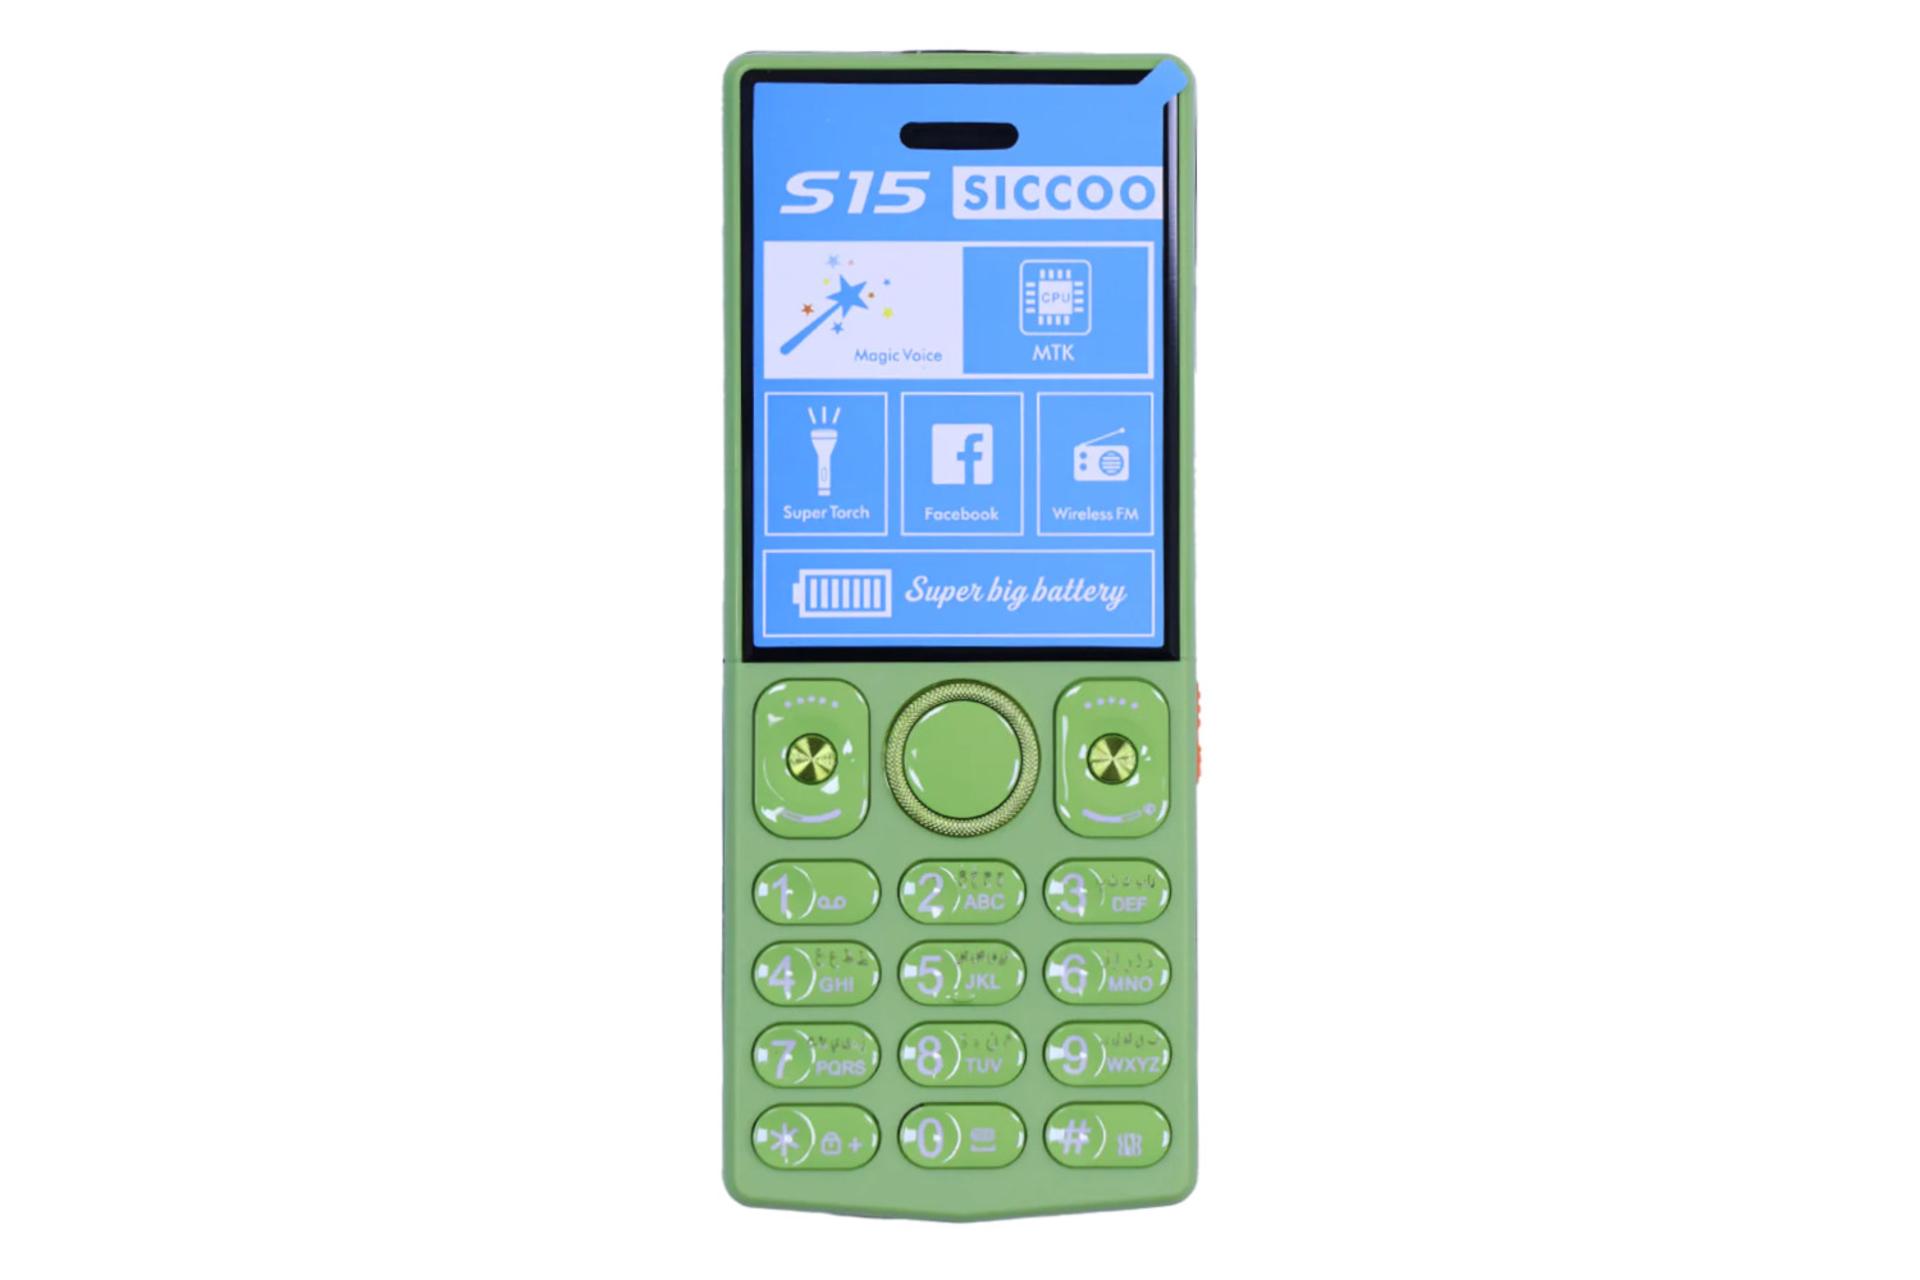 پنل جلو و صفحه کلید گوشی موبایل سیکو SICCOO S15 سبز روشن